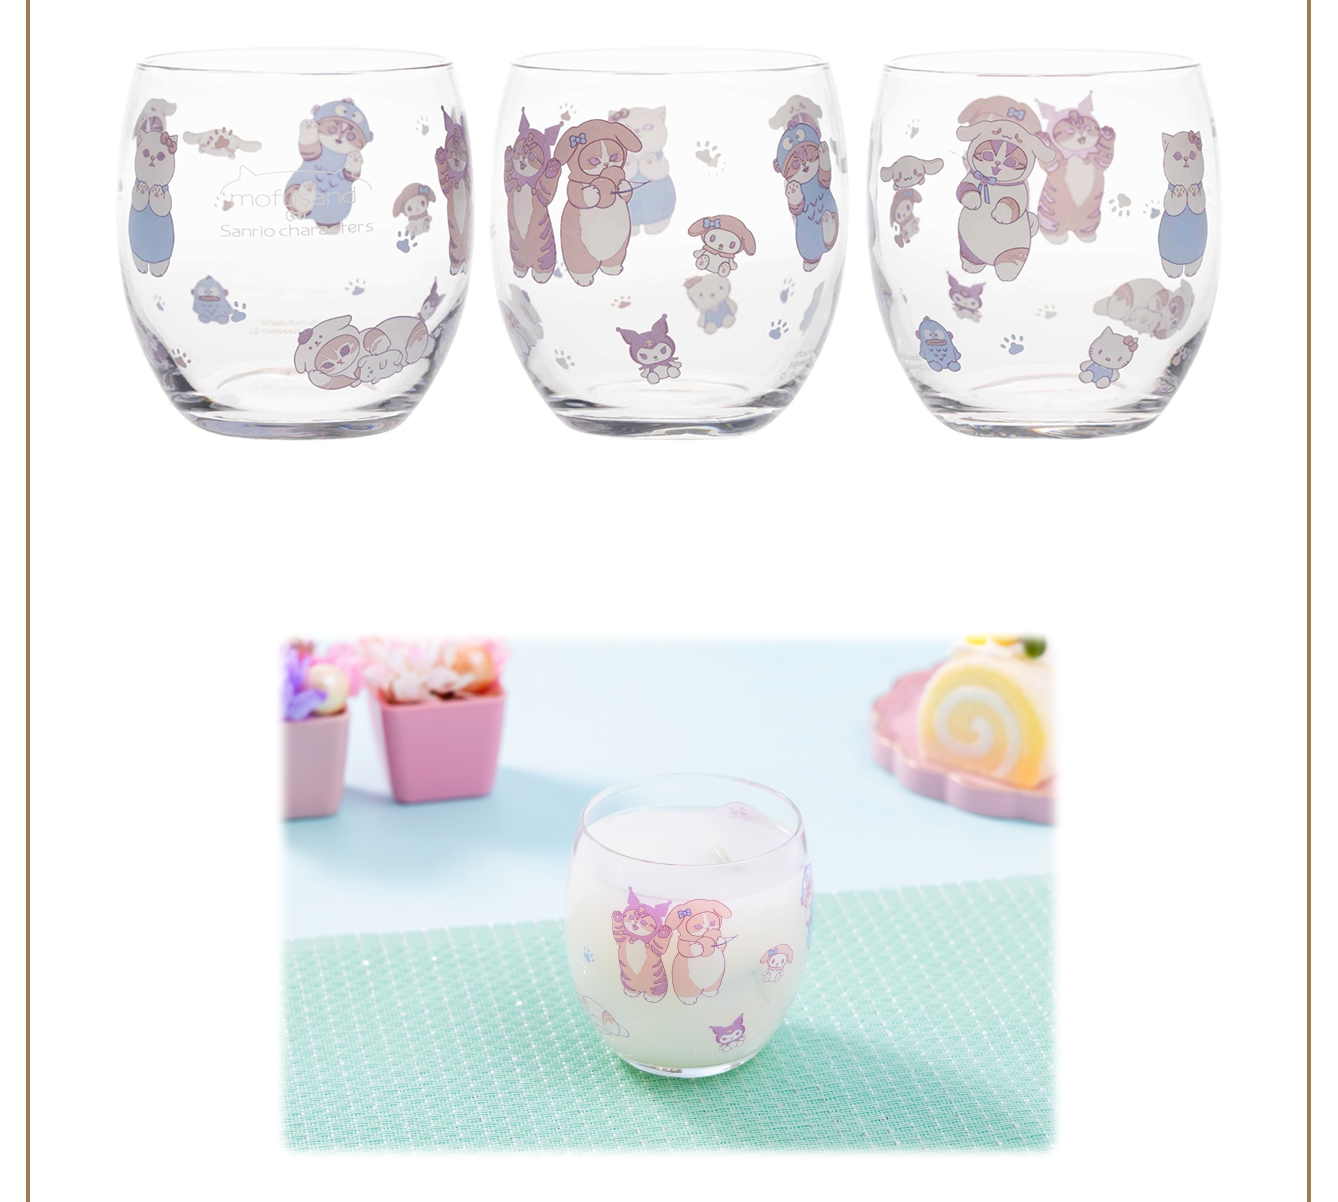 【訂貨】Mofusand x Sanrio 聯乘系列 第二彈 - 馬克杯 / 玻璃杯 / 碗